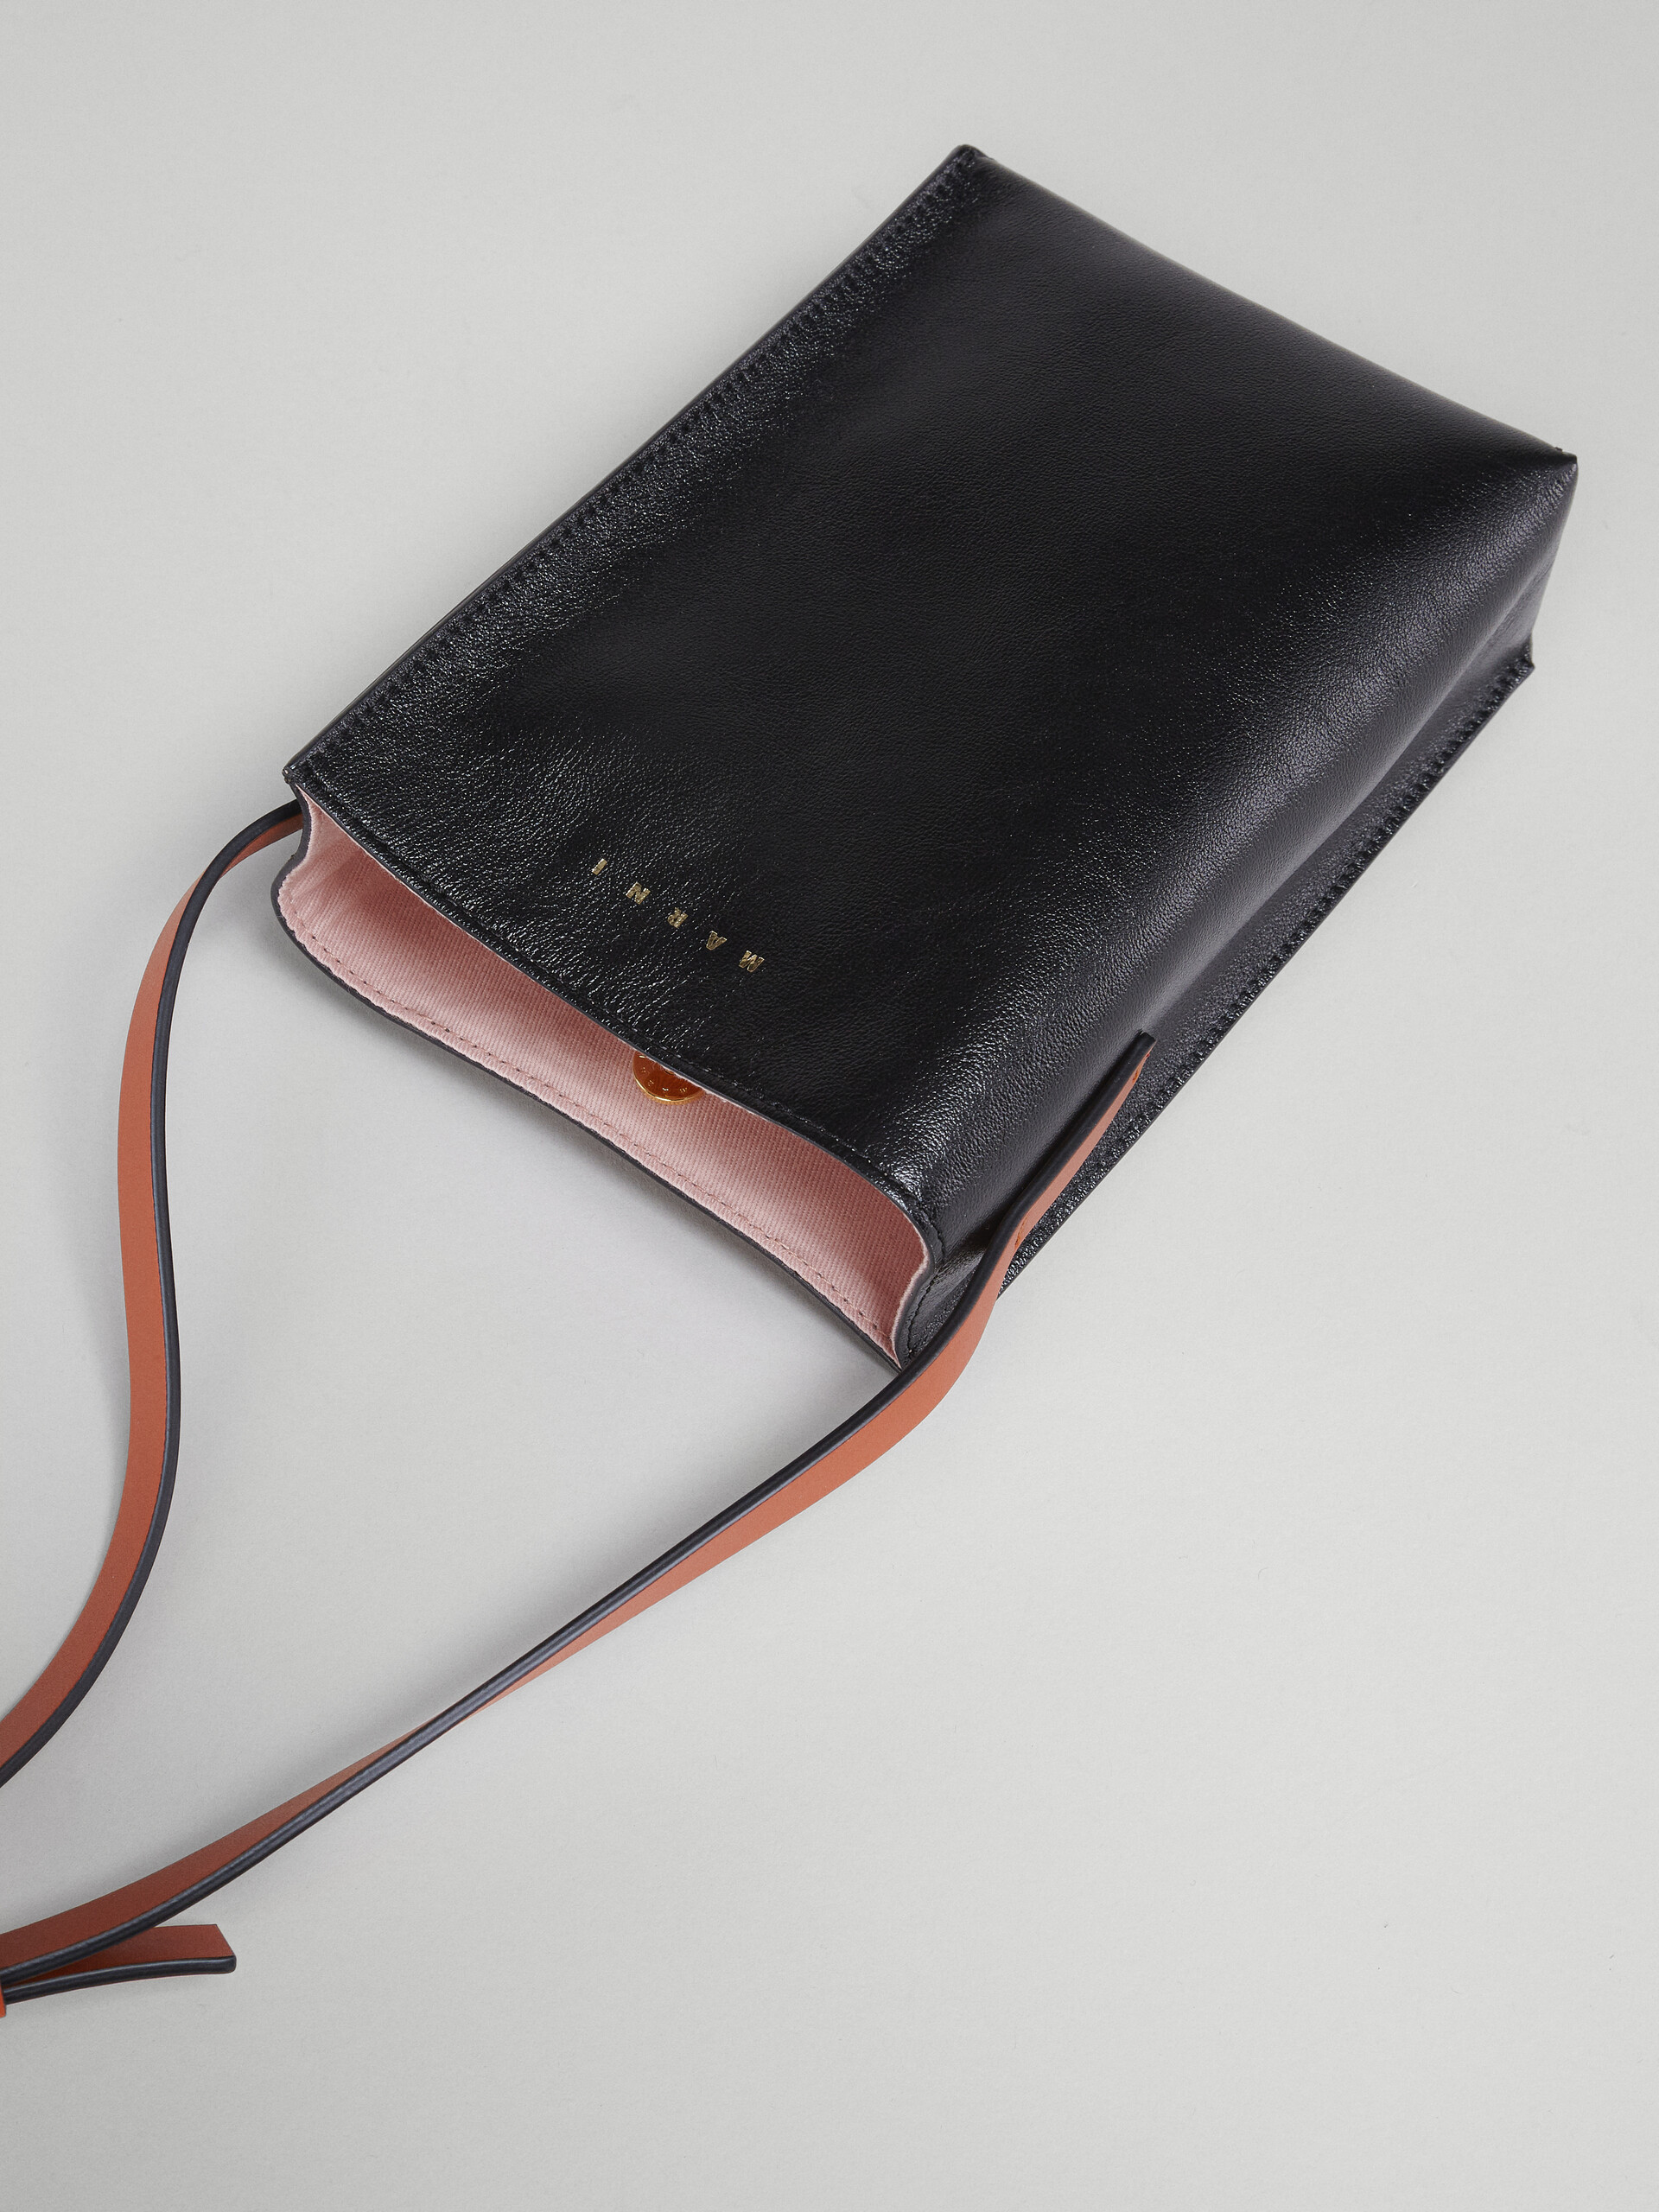 Museo Soft Bag Nano in pelle nera e grigia - Borse a spalla - Image 4